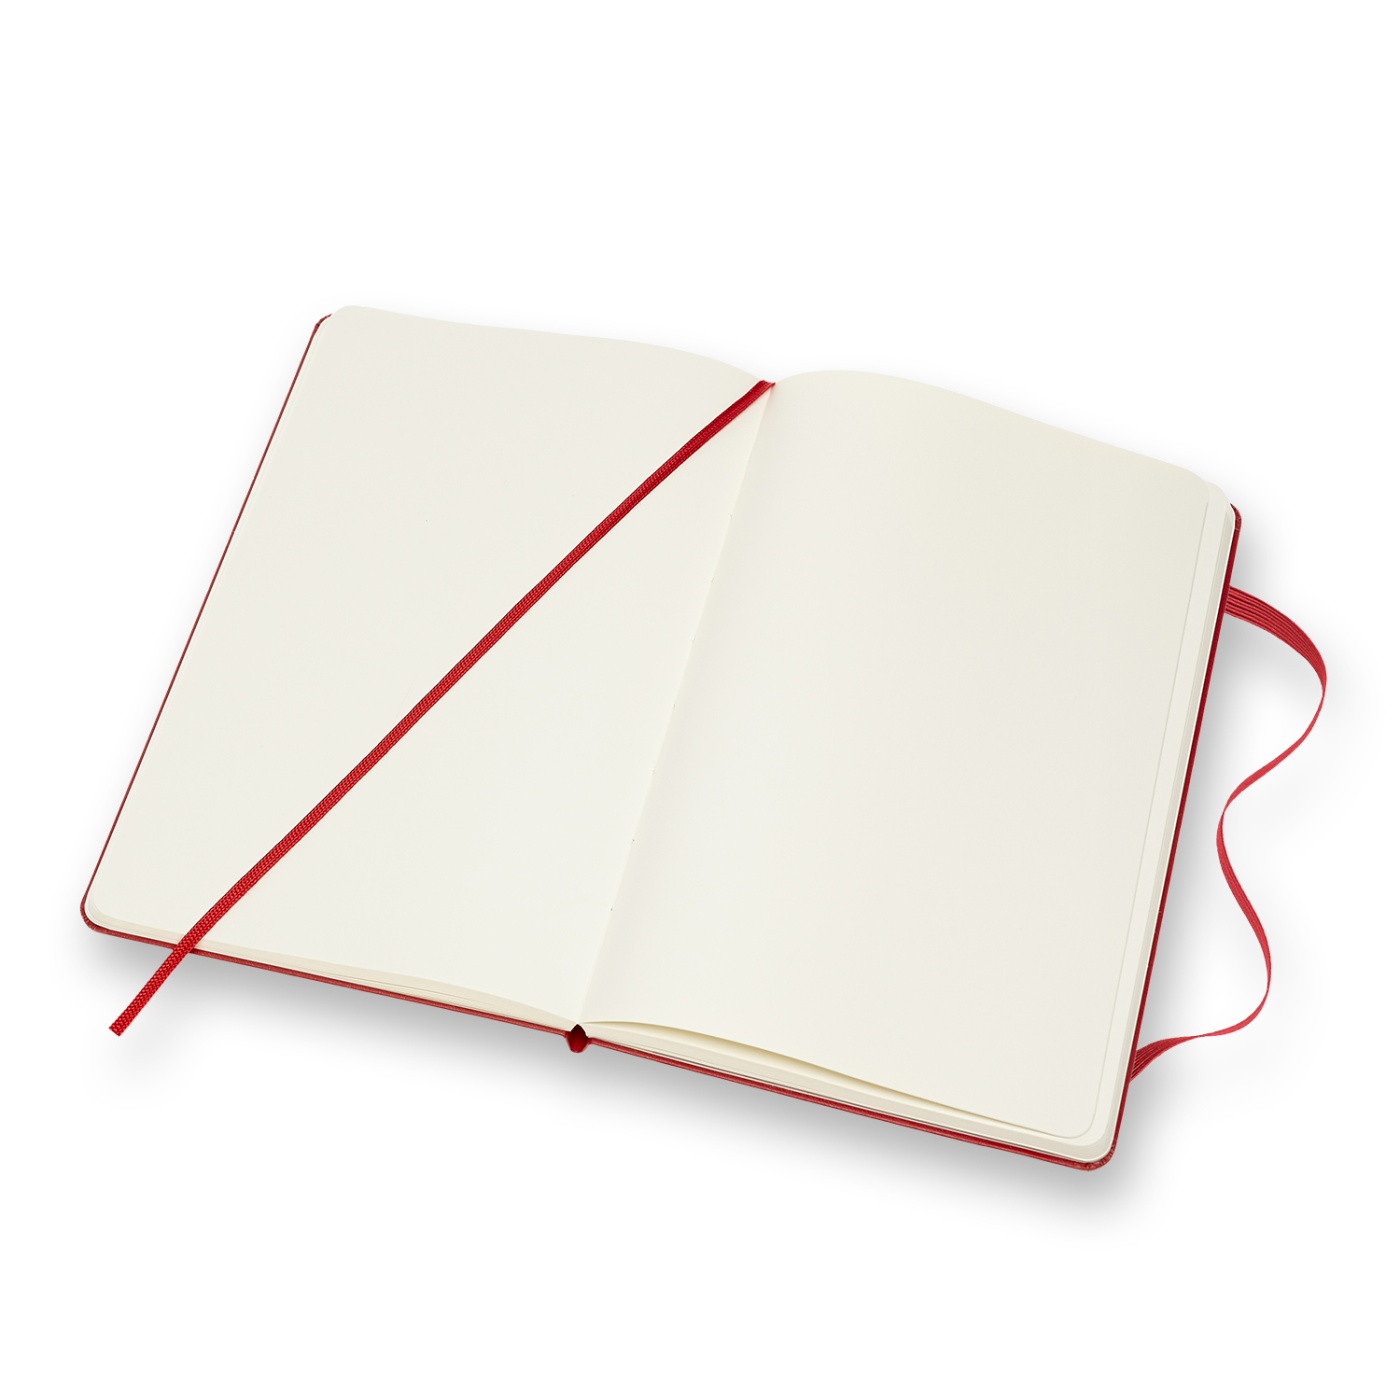 Classic Hardcover Large Red in der Gruppe Papier & Blöcke / Schreiben und Notizen / Notizbücher bei Pen Store (100355_r)